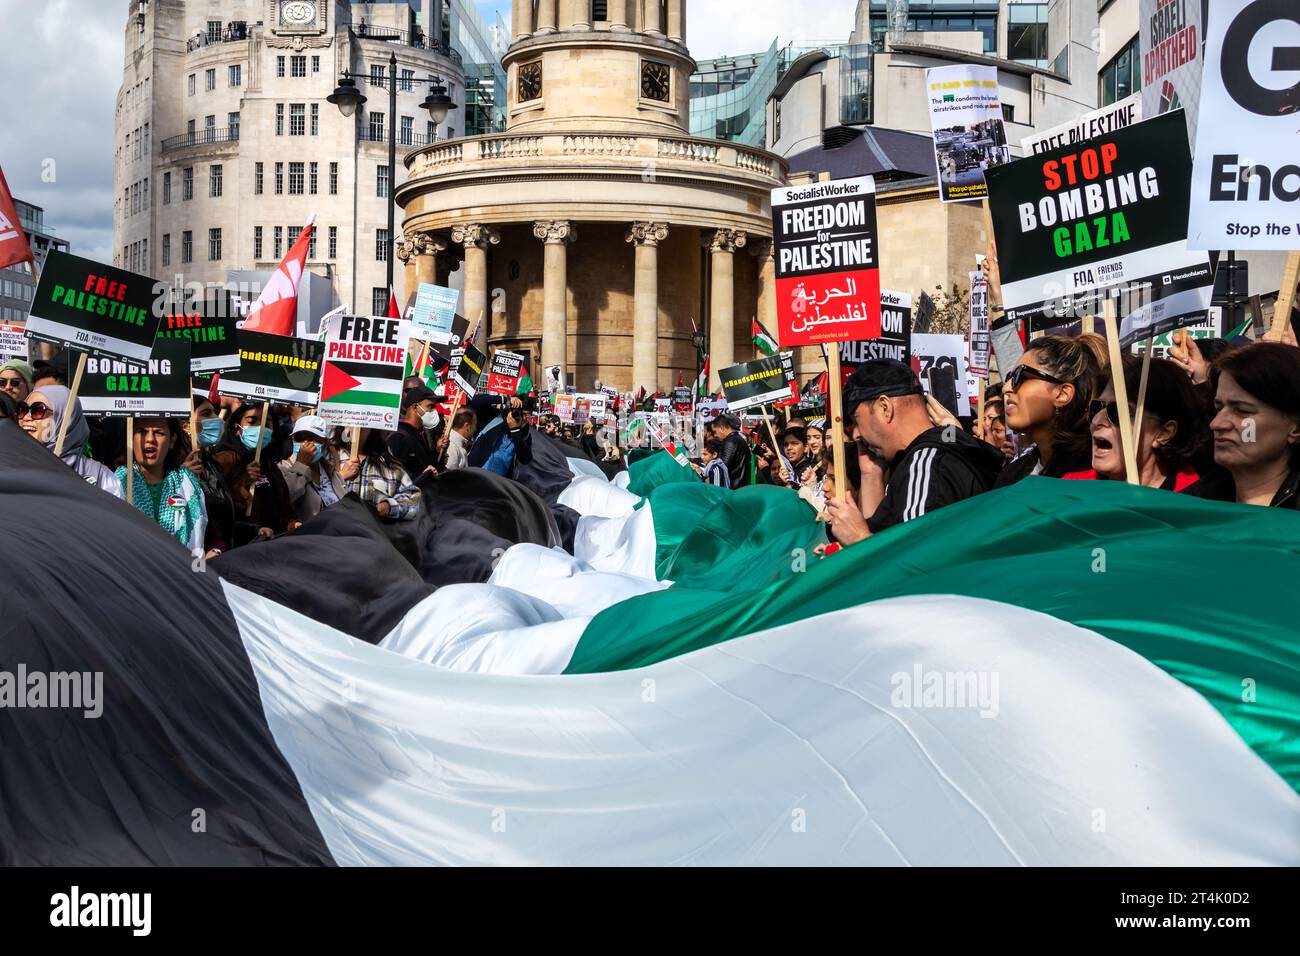 März Für Palästina. Große palästinensische Flagge, die durch die Straßen Londons getragen wird. Stockfoto